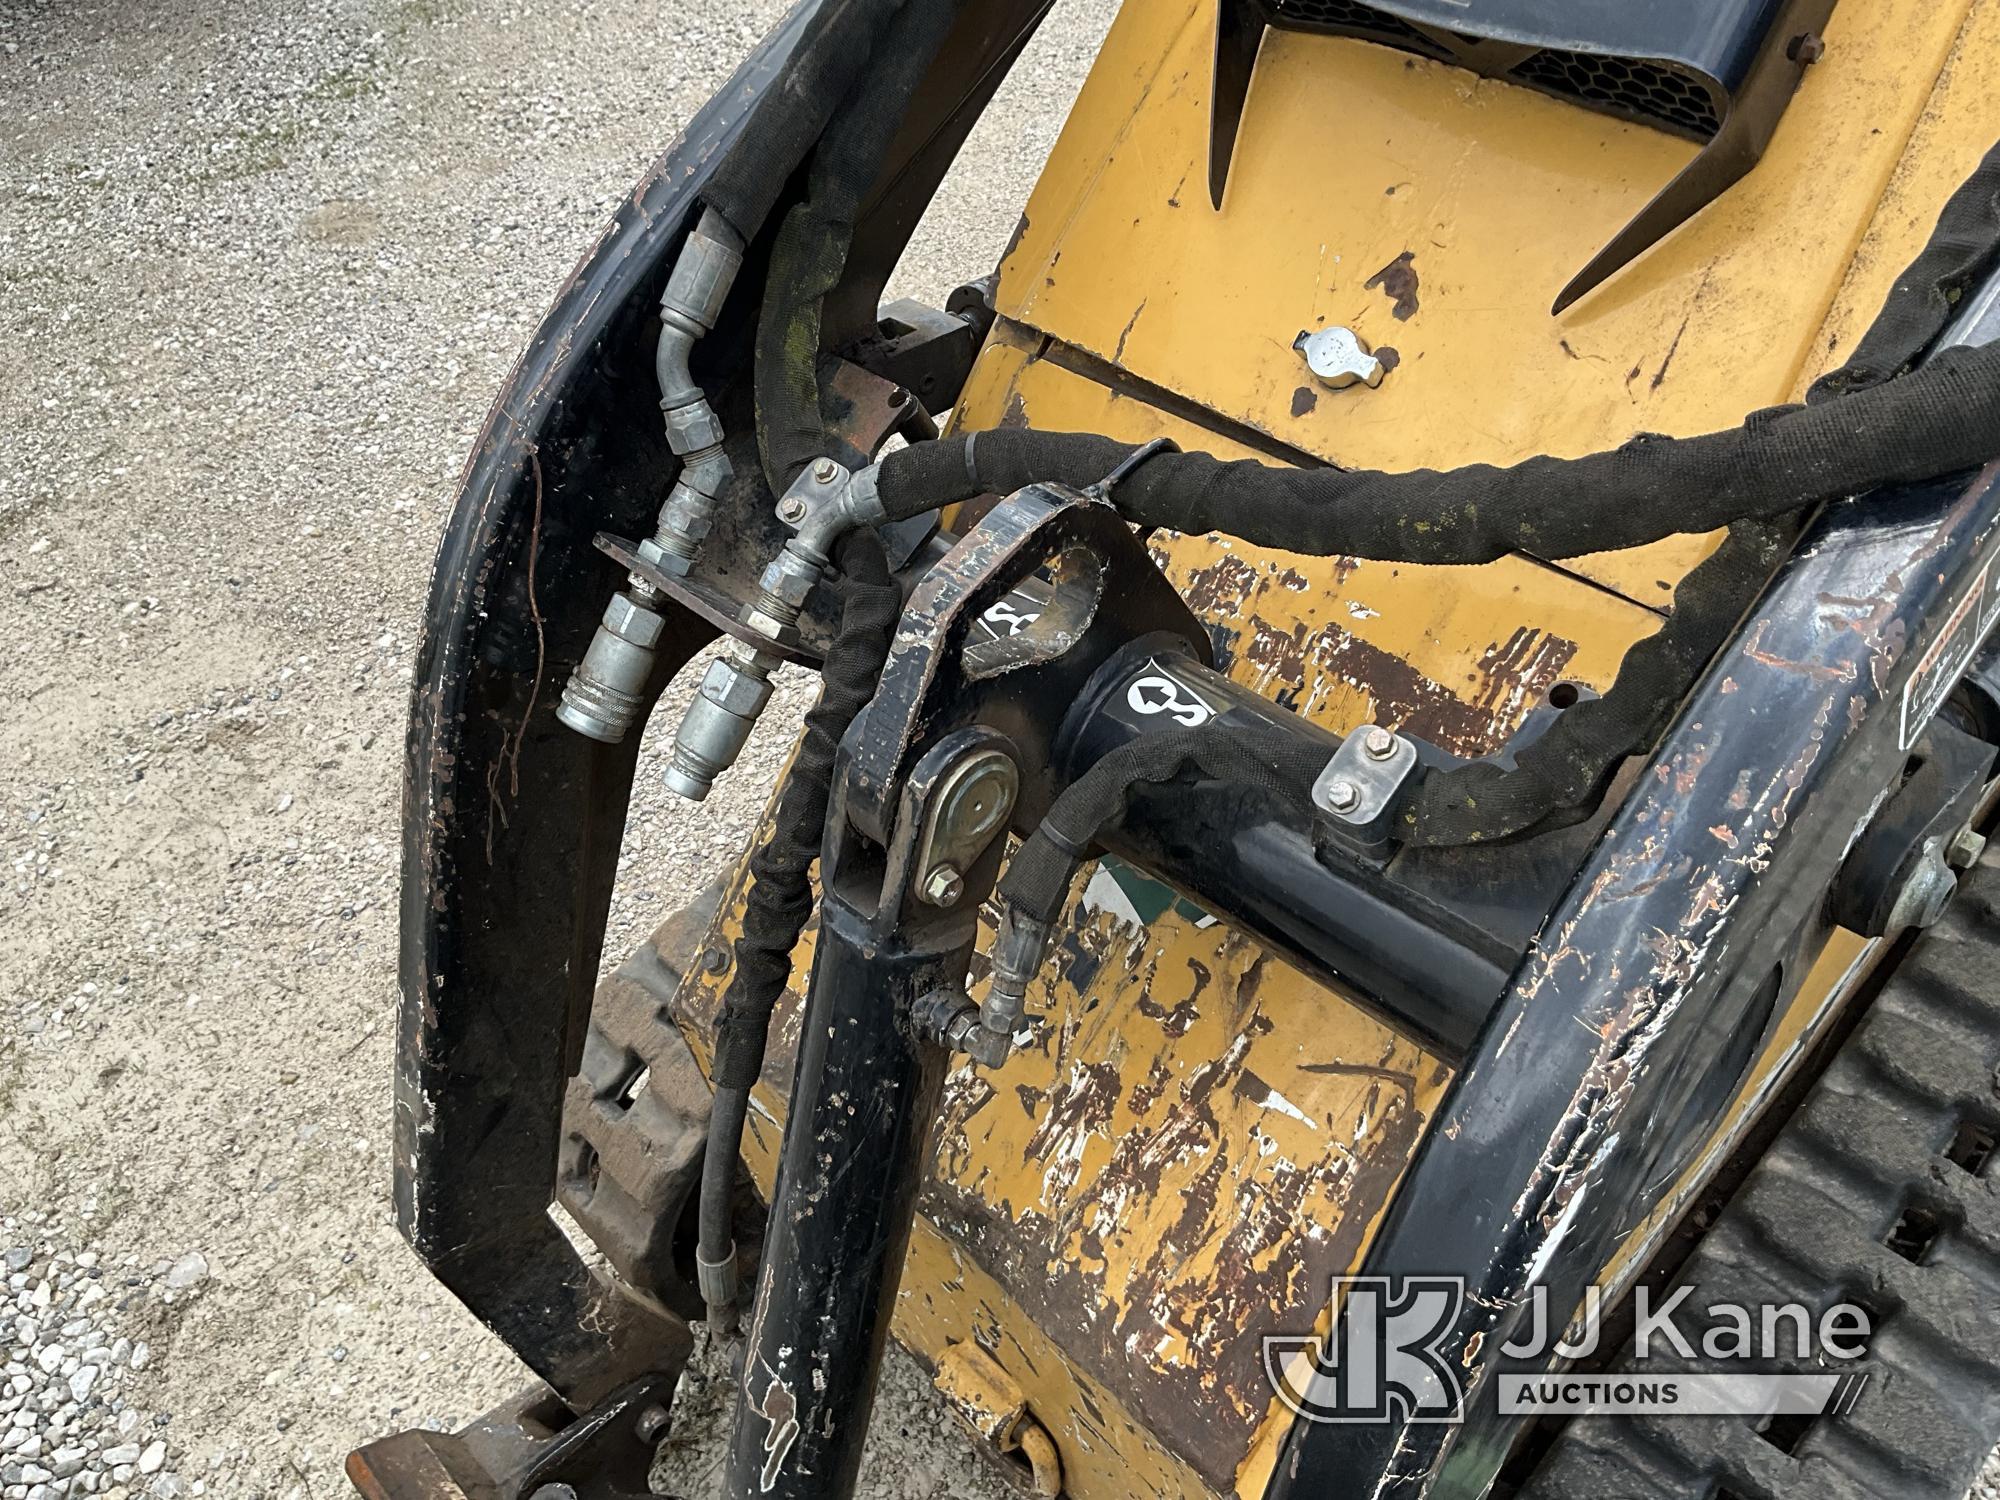 (Elizabethtown, KY) 2013 Vermeer S650TX Walk-Behind Crawler Skid Steer Loader Not Running, Condition